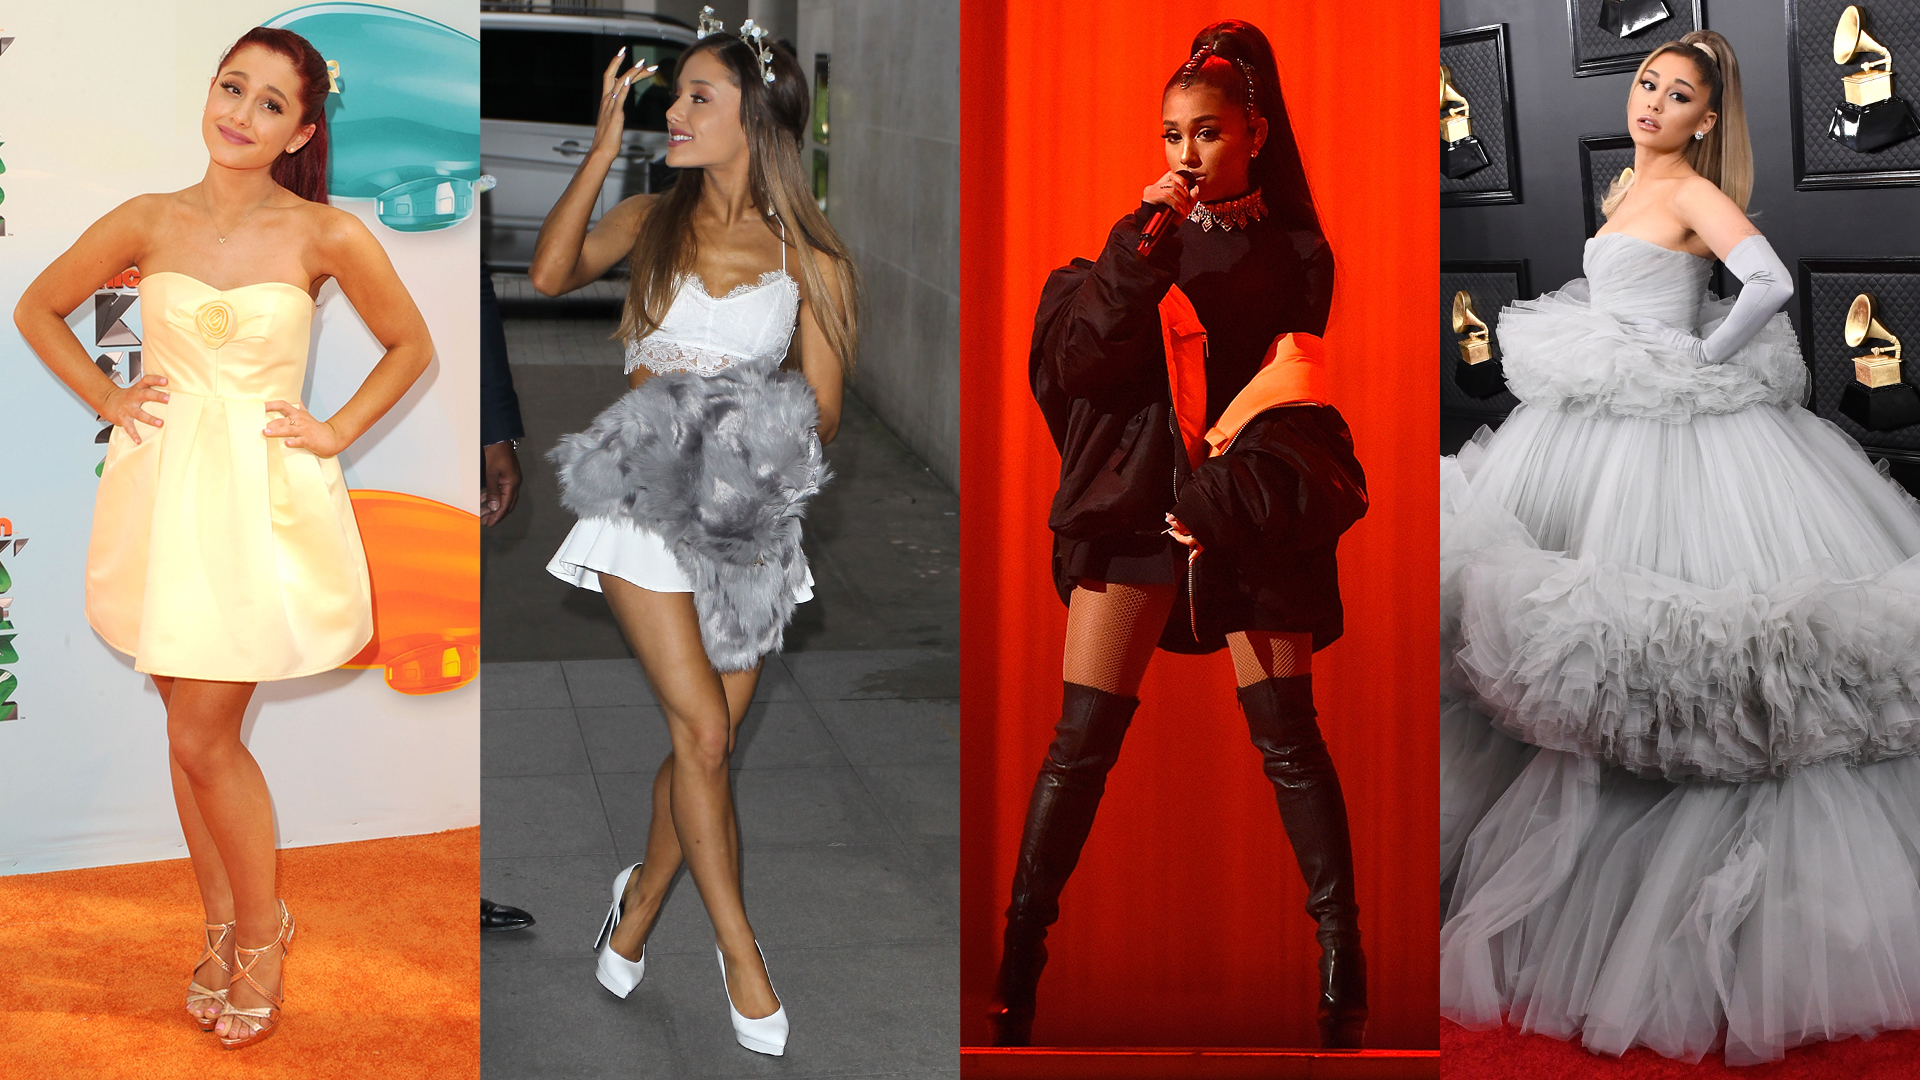 Ariana Grande's Sweetener Tour Costumes: Looks Are Custom Designer